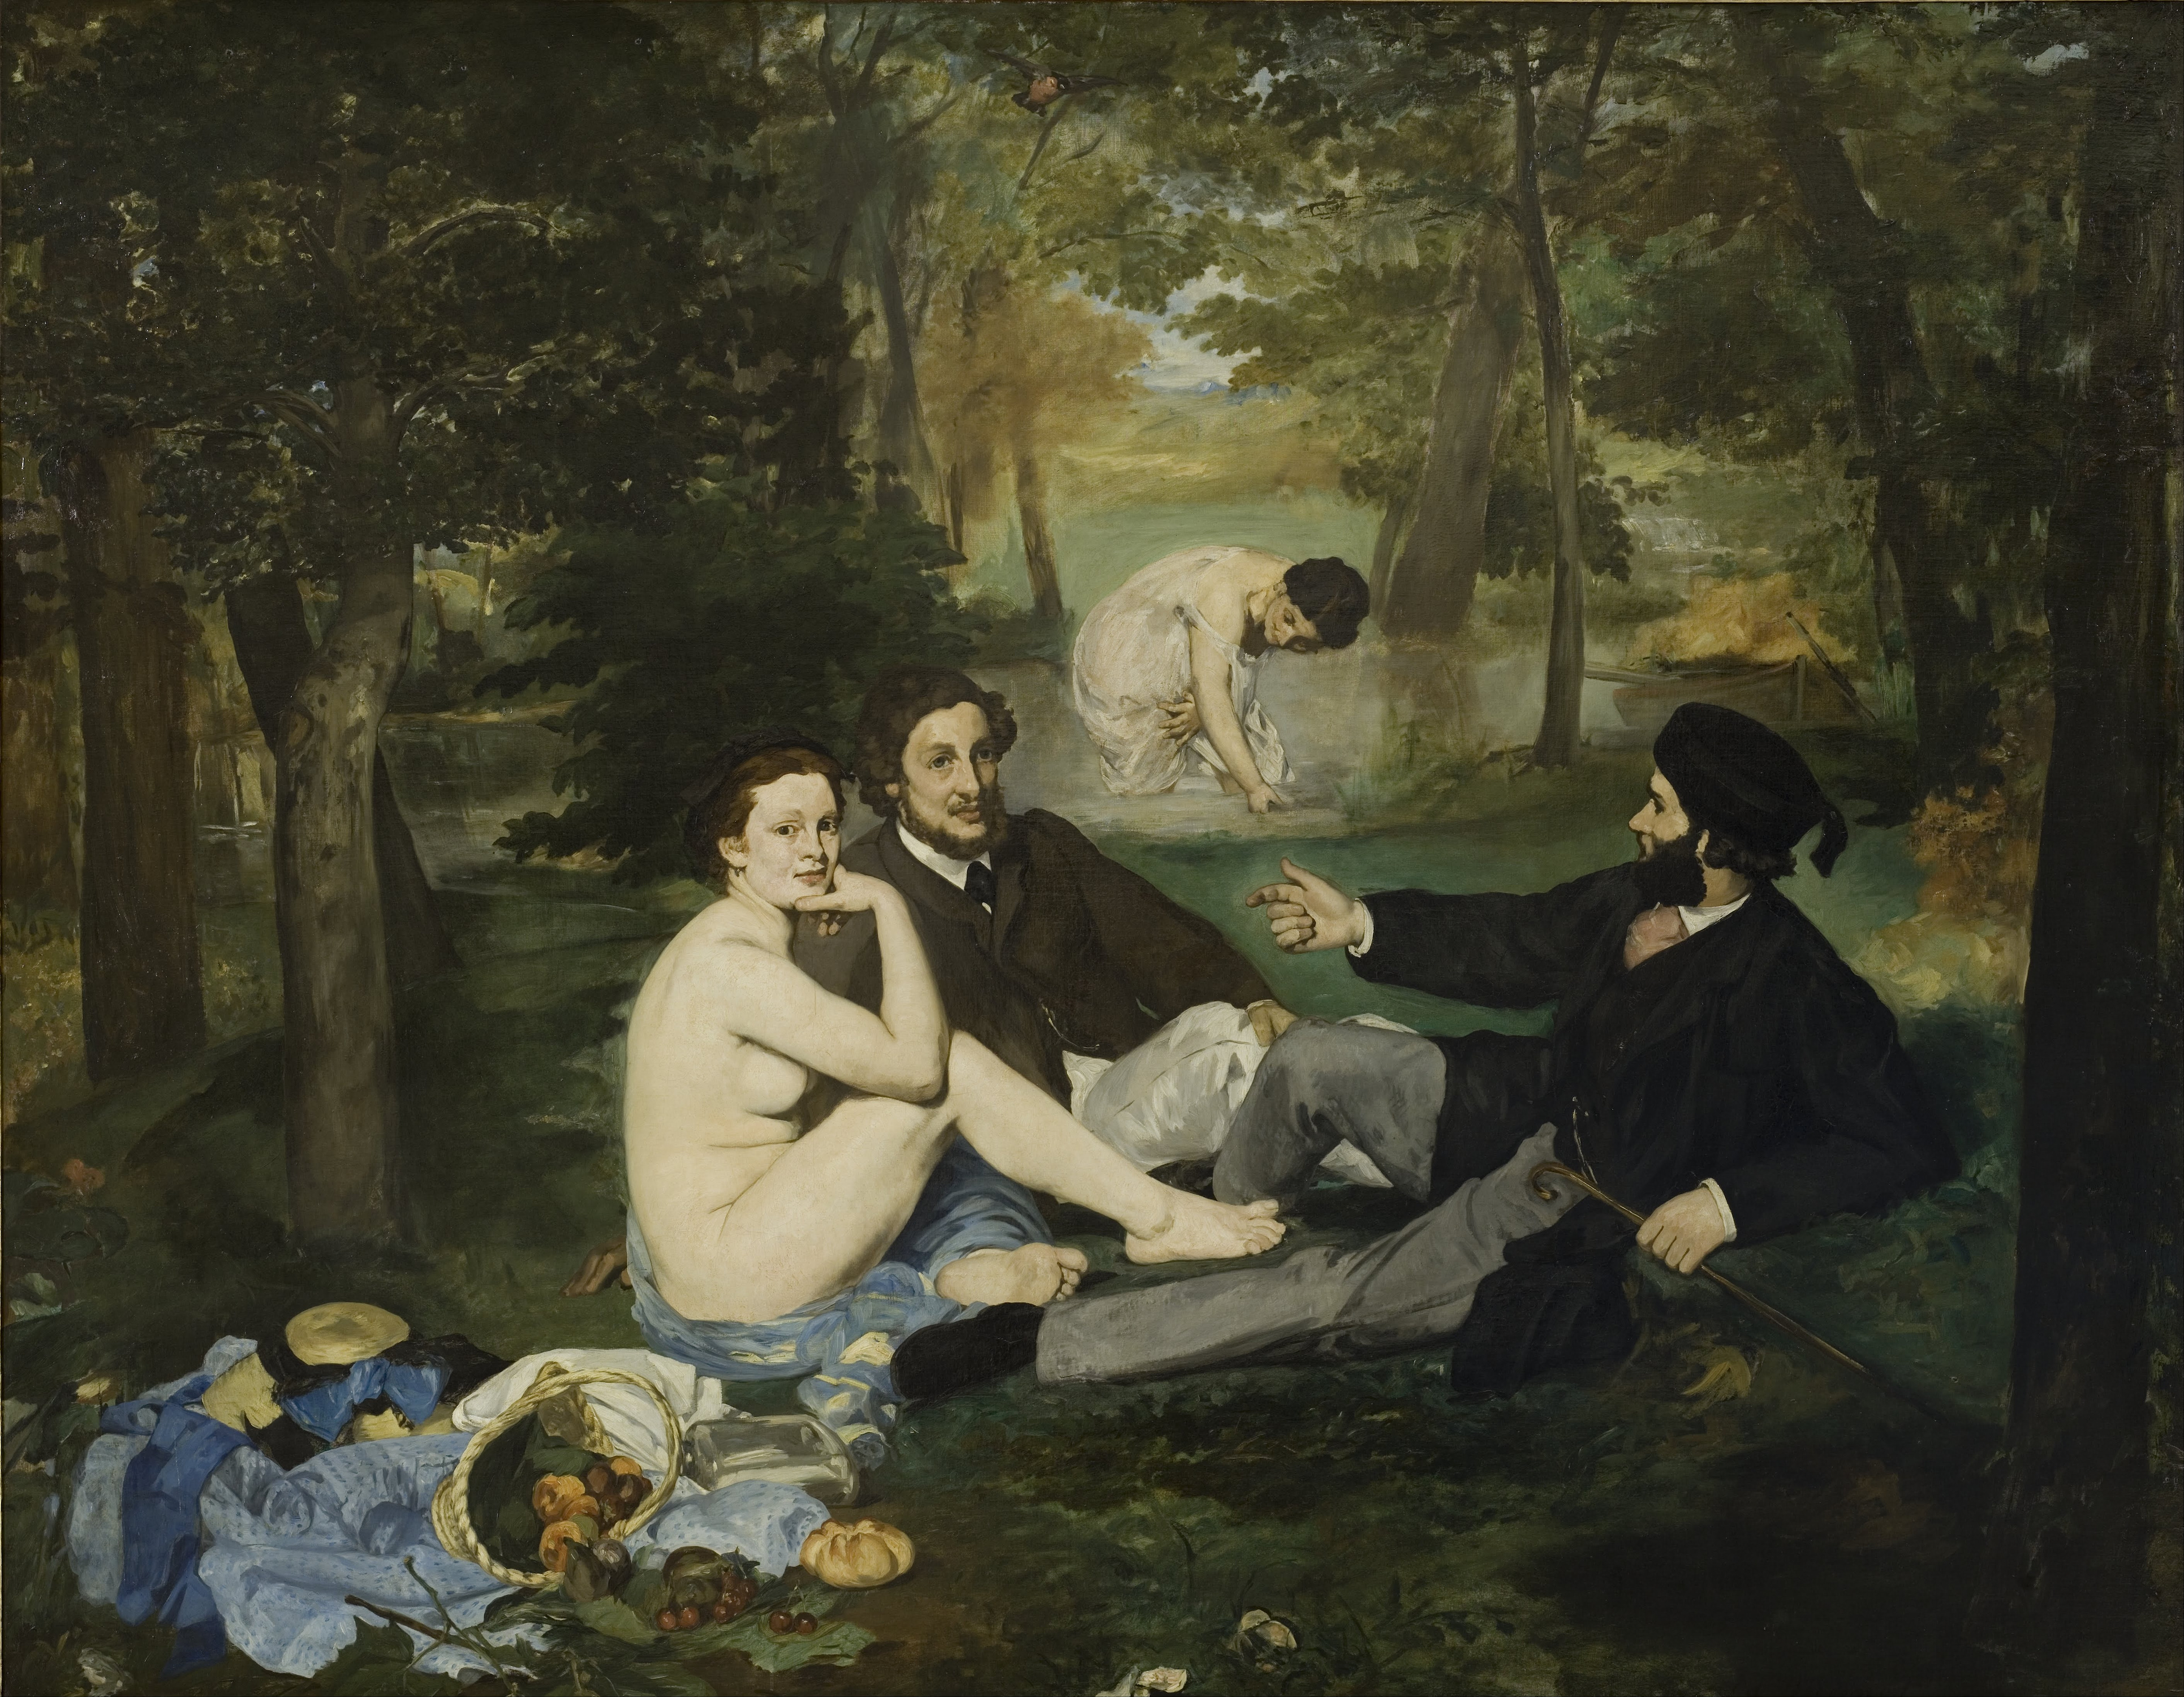 Déjeuner sur l'herbe by Édouard Manet - 1862-1863 - 208 × 265 cm Musée d'Orsay